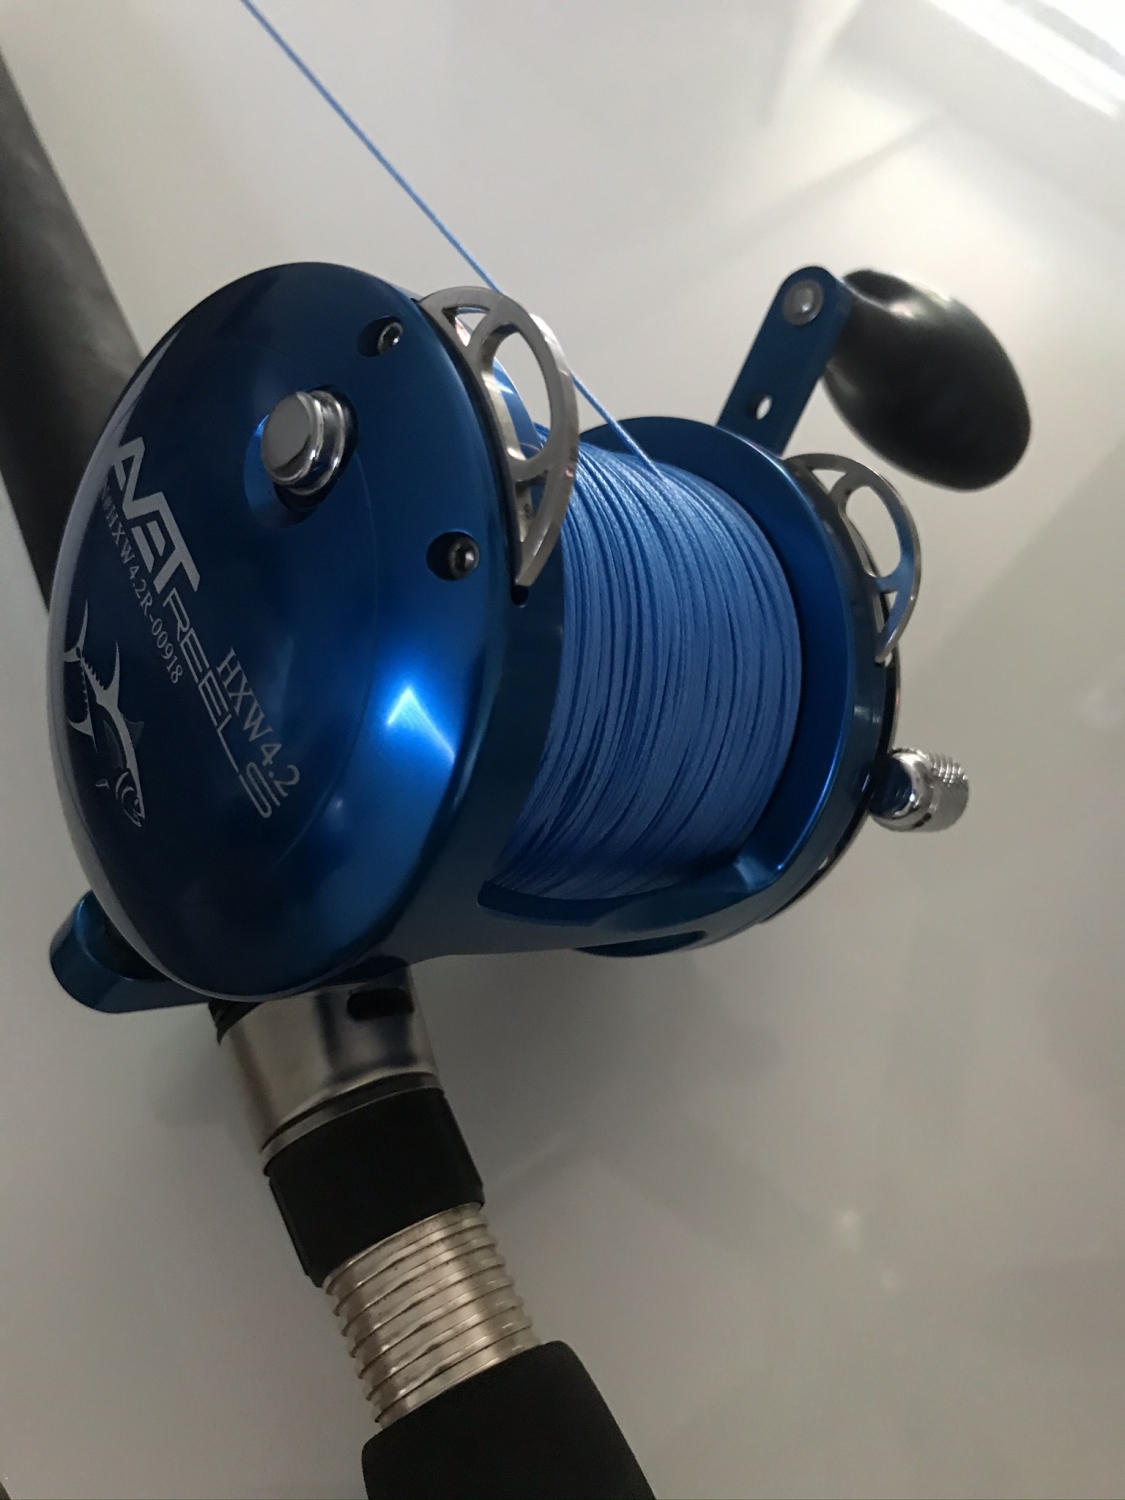 Momoi Diamond Braid Generation III Fishing Line 8x - Blue - 80lb